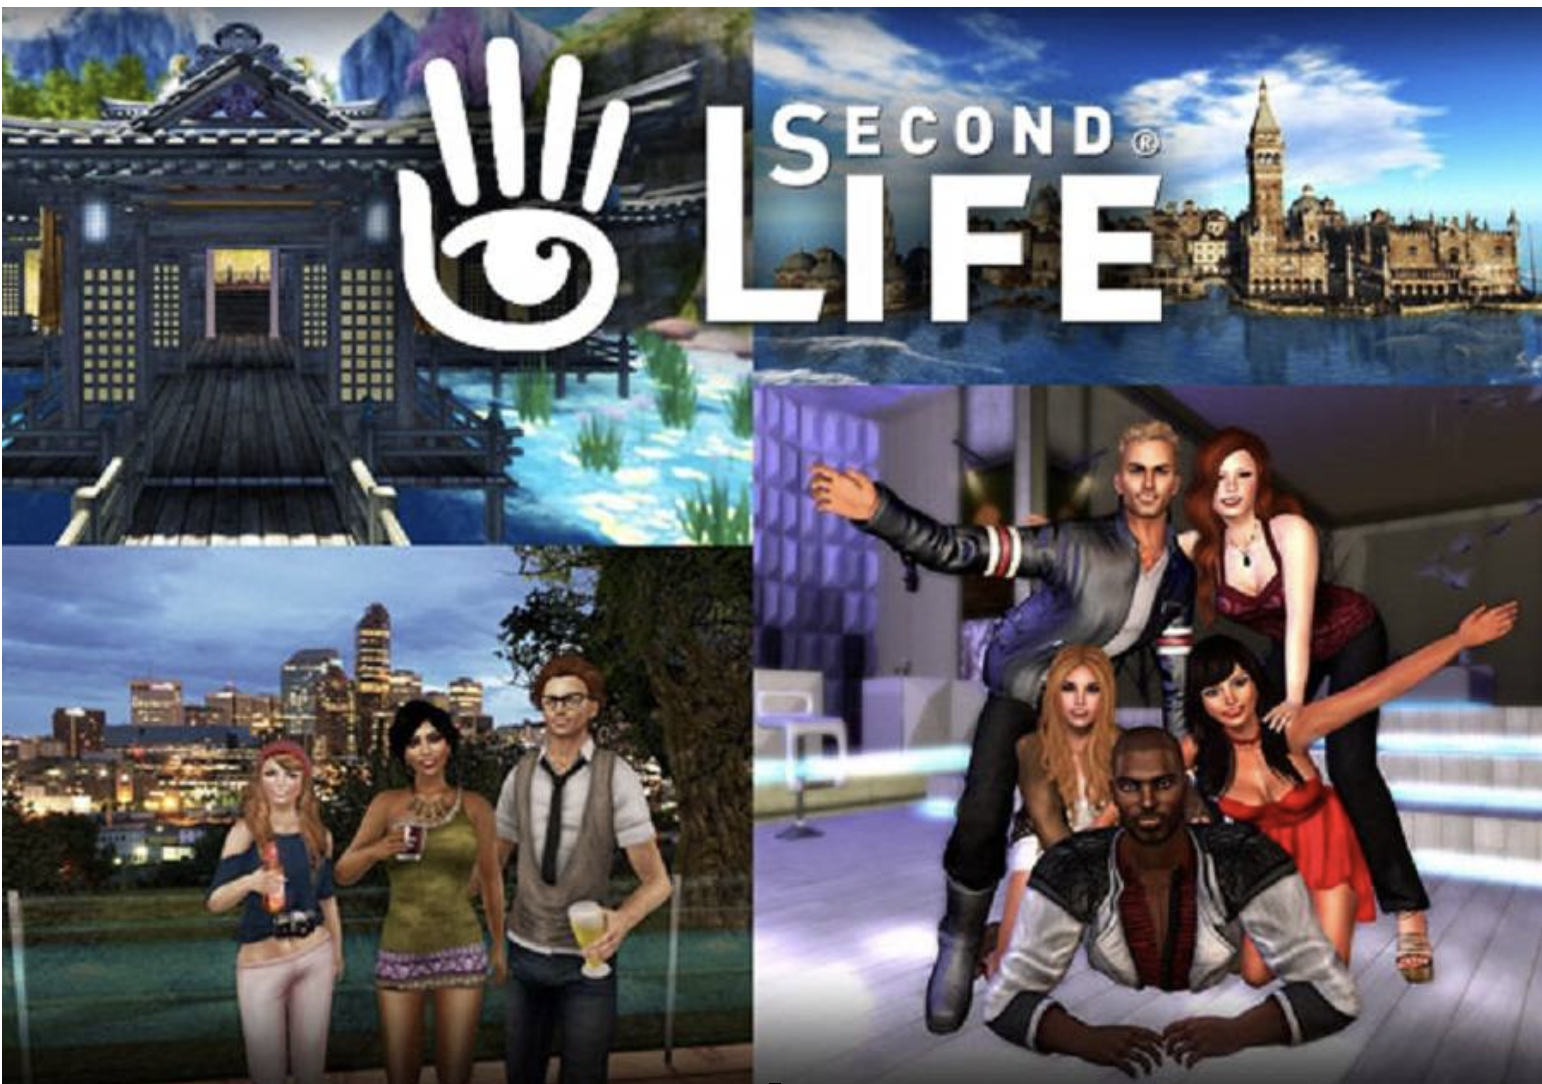 Second life 1. Second Life игра. Виртуальный мир second Life. Секонд лайф 2 игра. Игра в жизни.